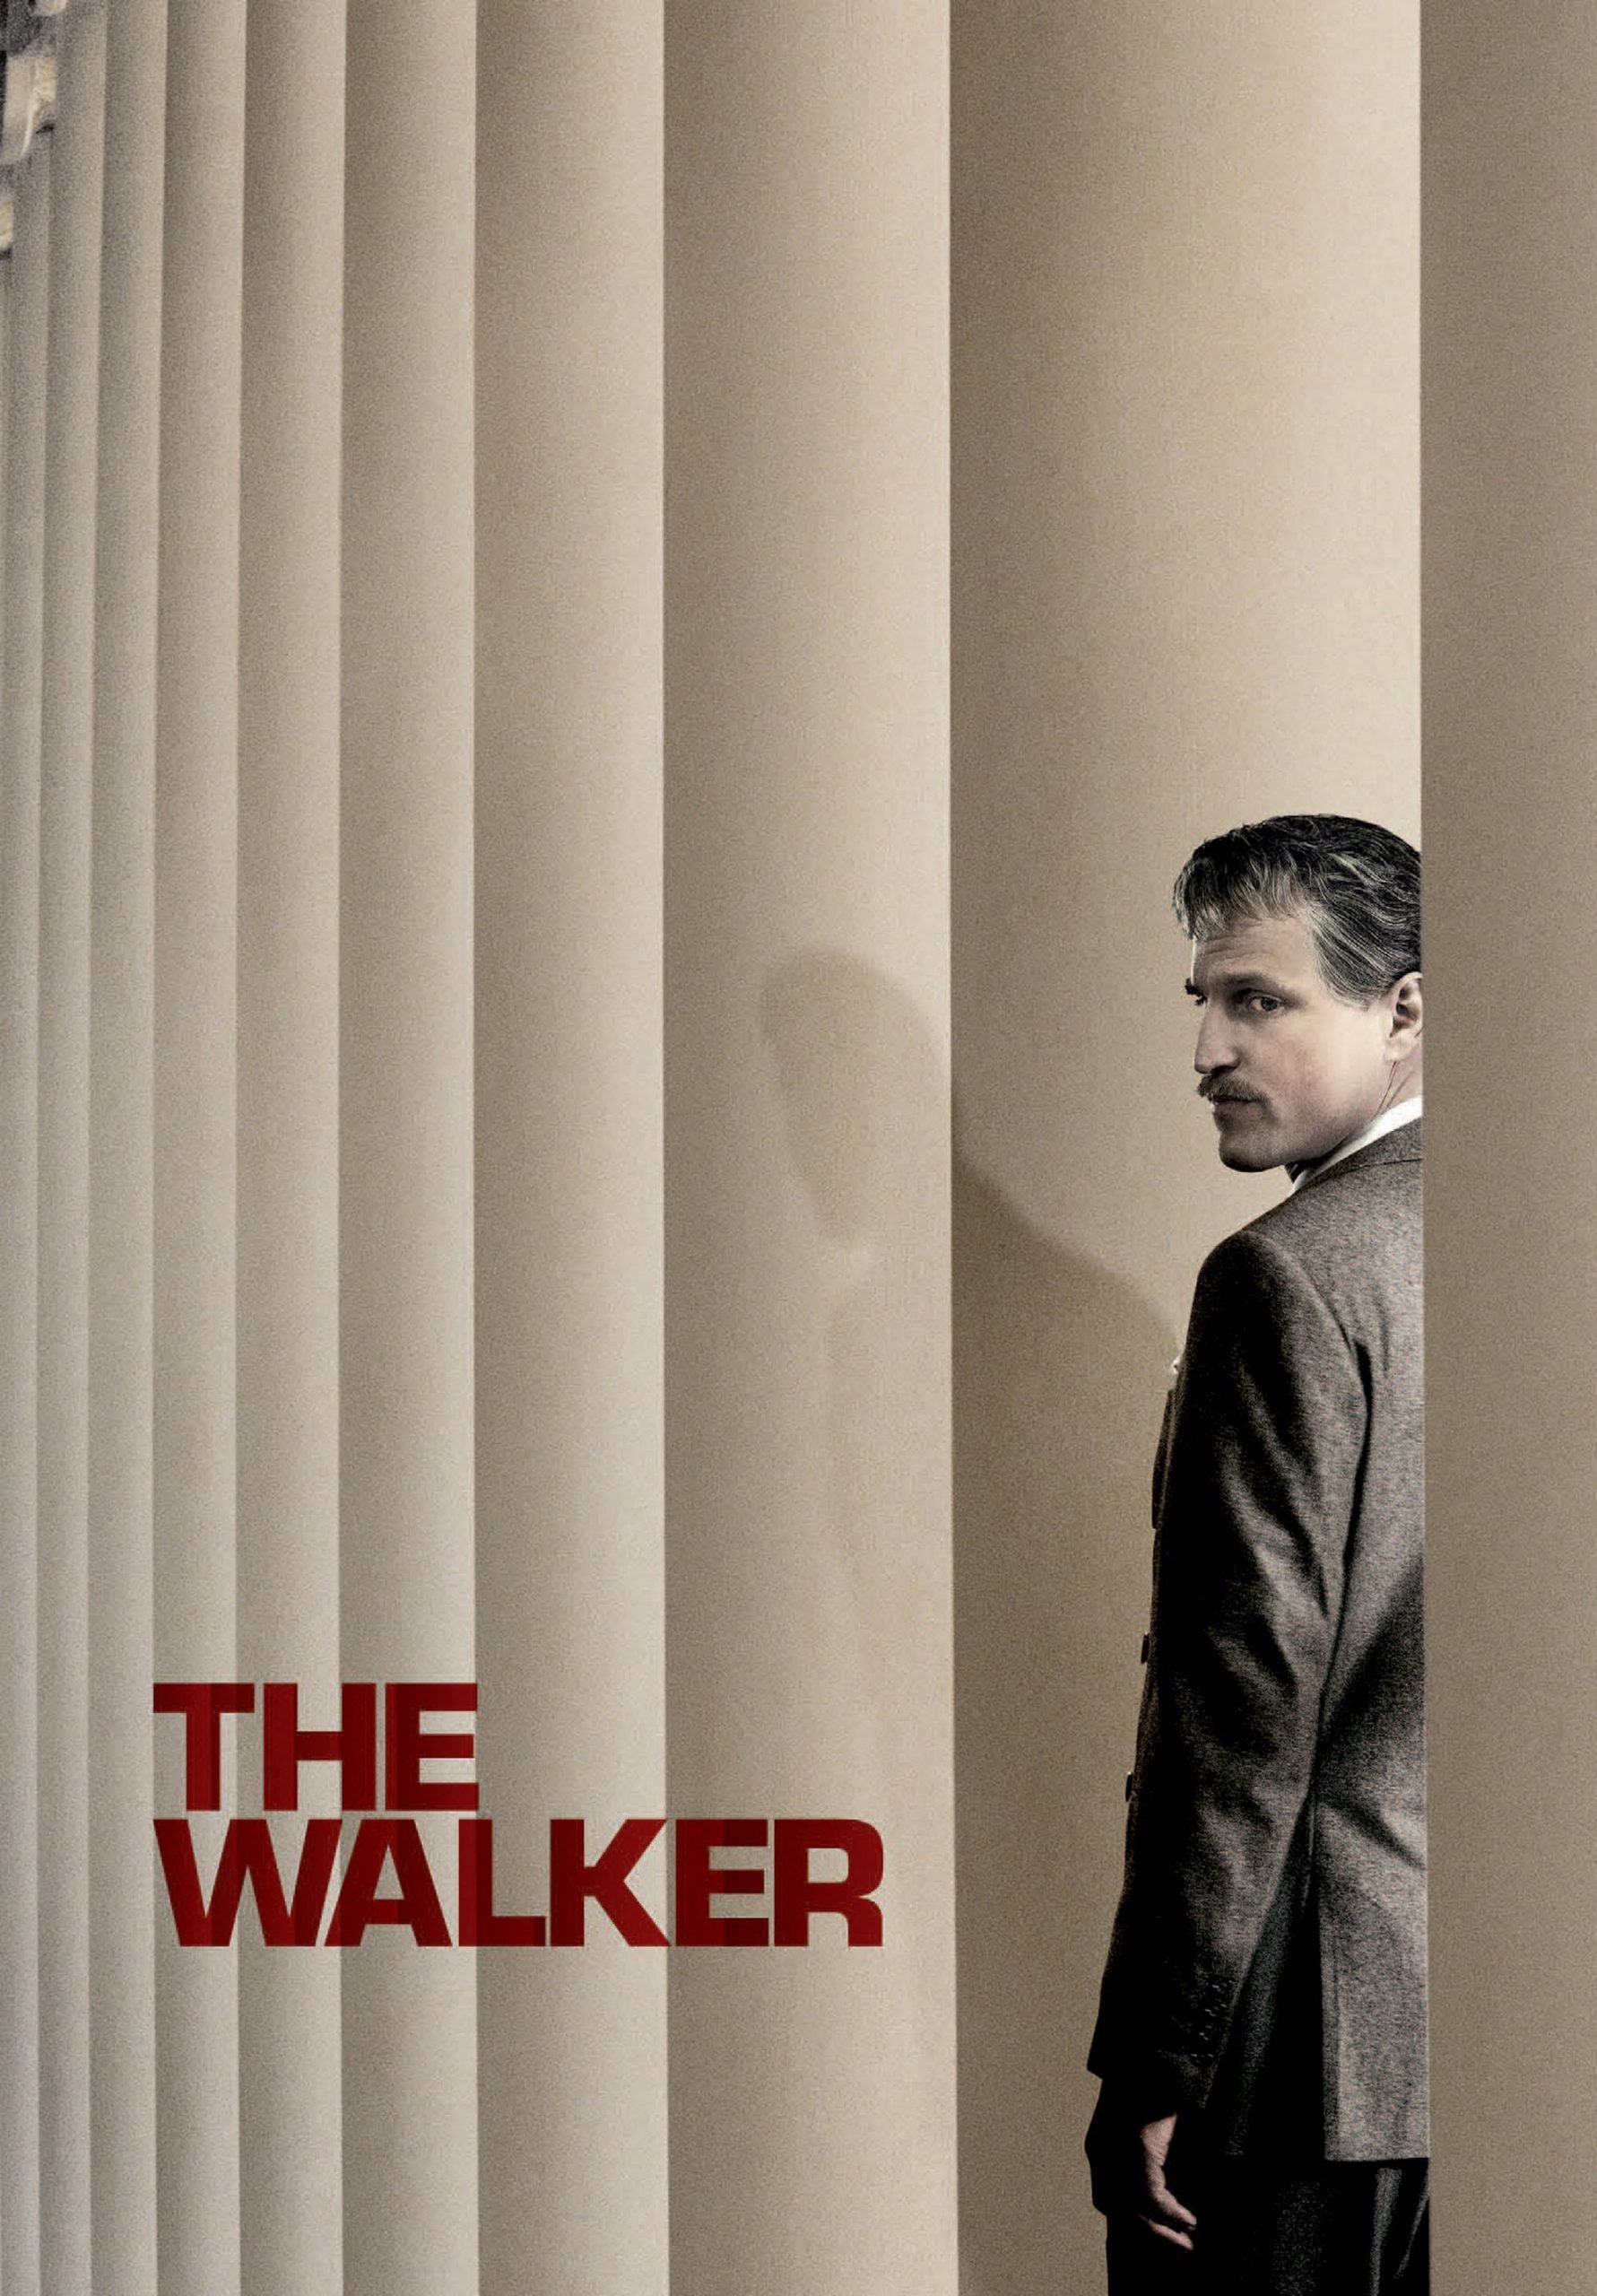 The Walker [HD] (2007)